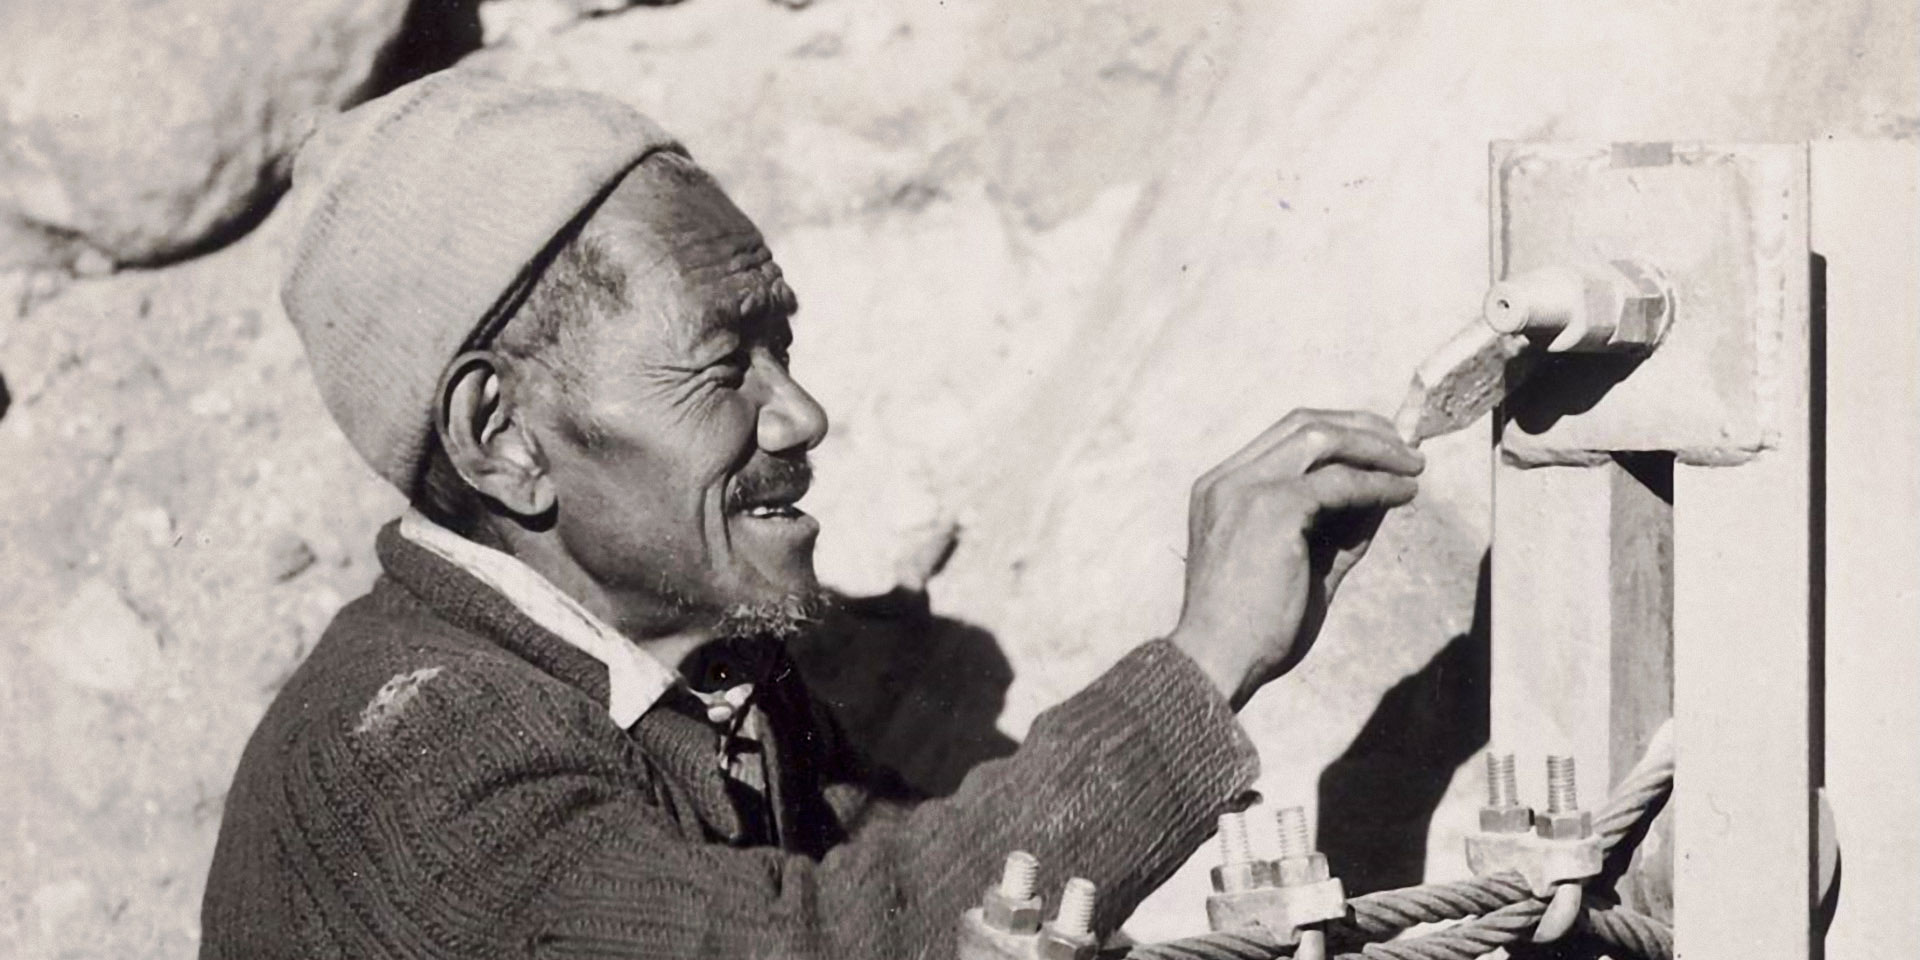 El nepalí Ang Tsering Sherpa pintando un elemento del puente con pintura y pincel.